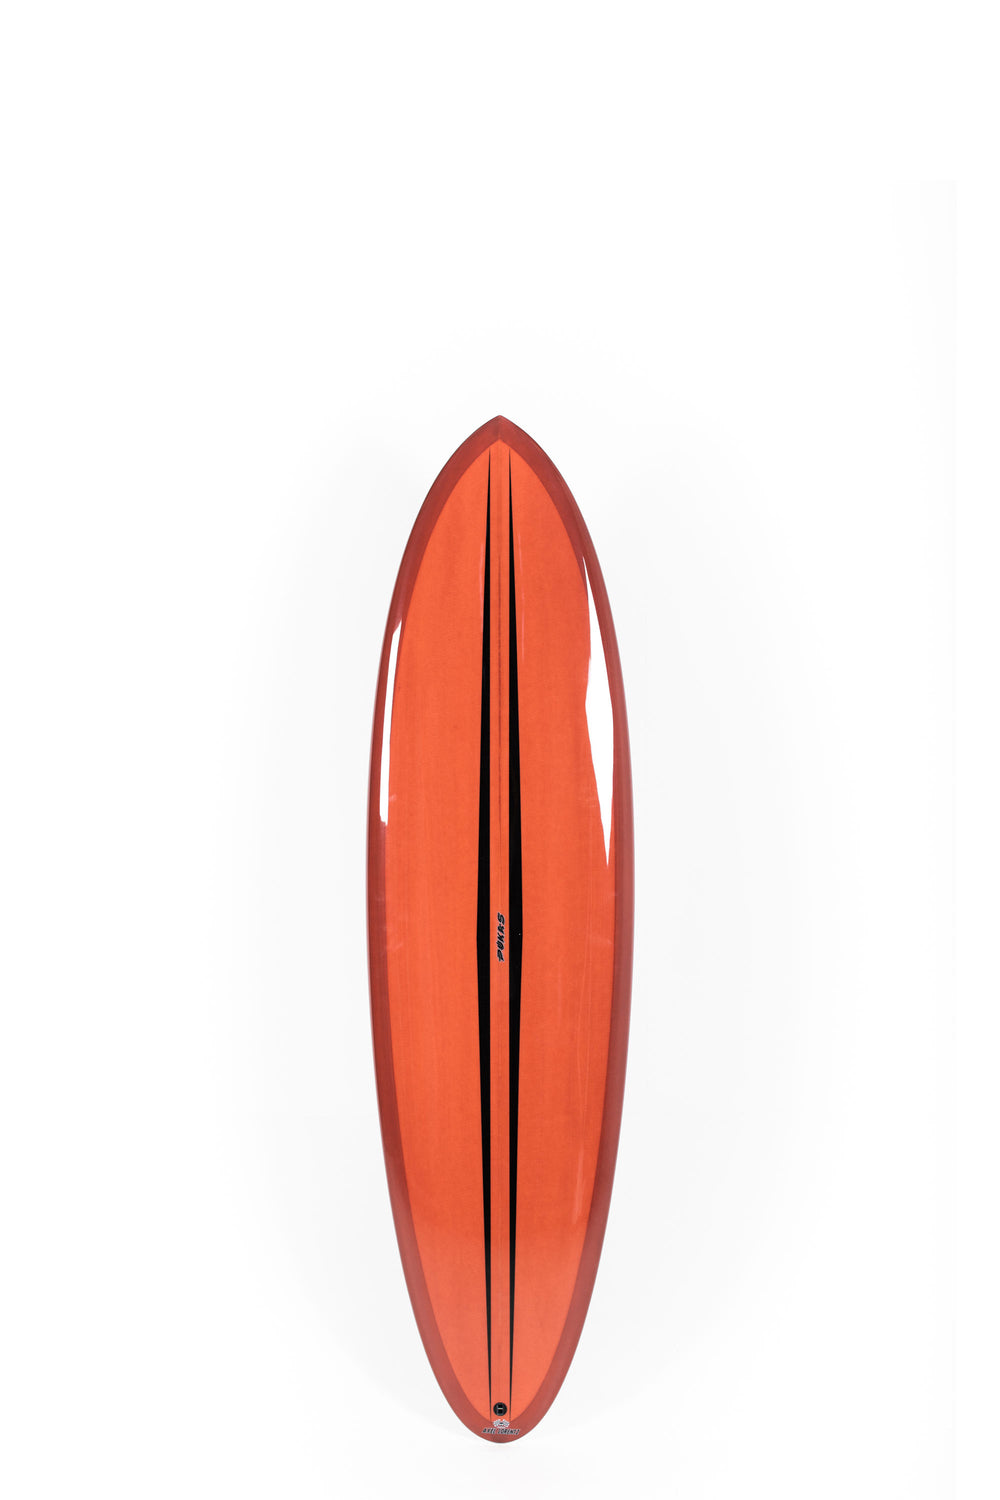 Pukas Surf Shop - Pukas Surfboard - LA CÔTE by Axel Lorentz - 6´8